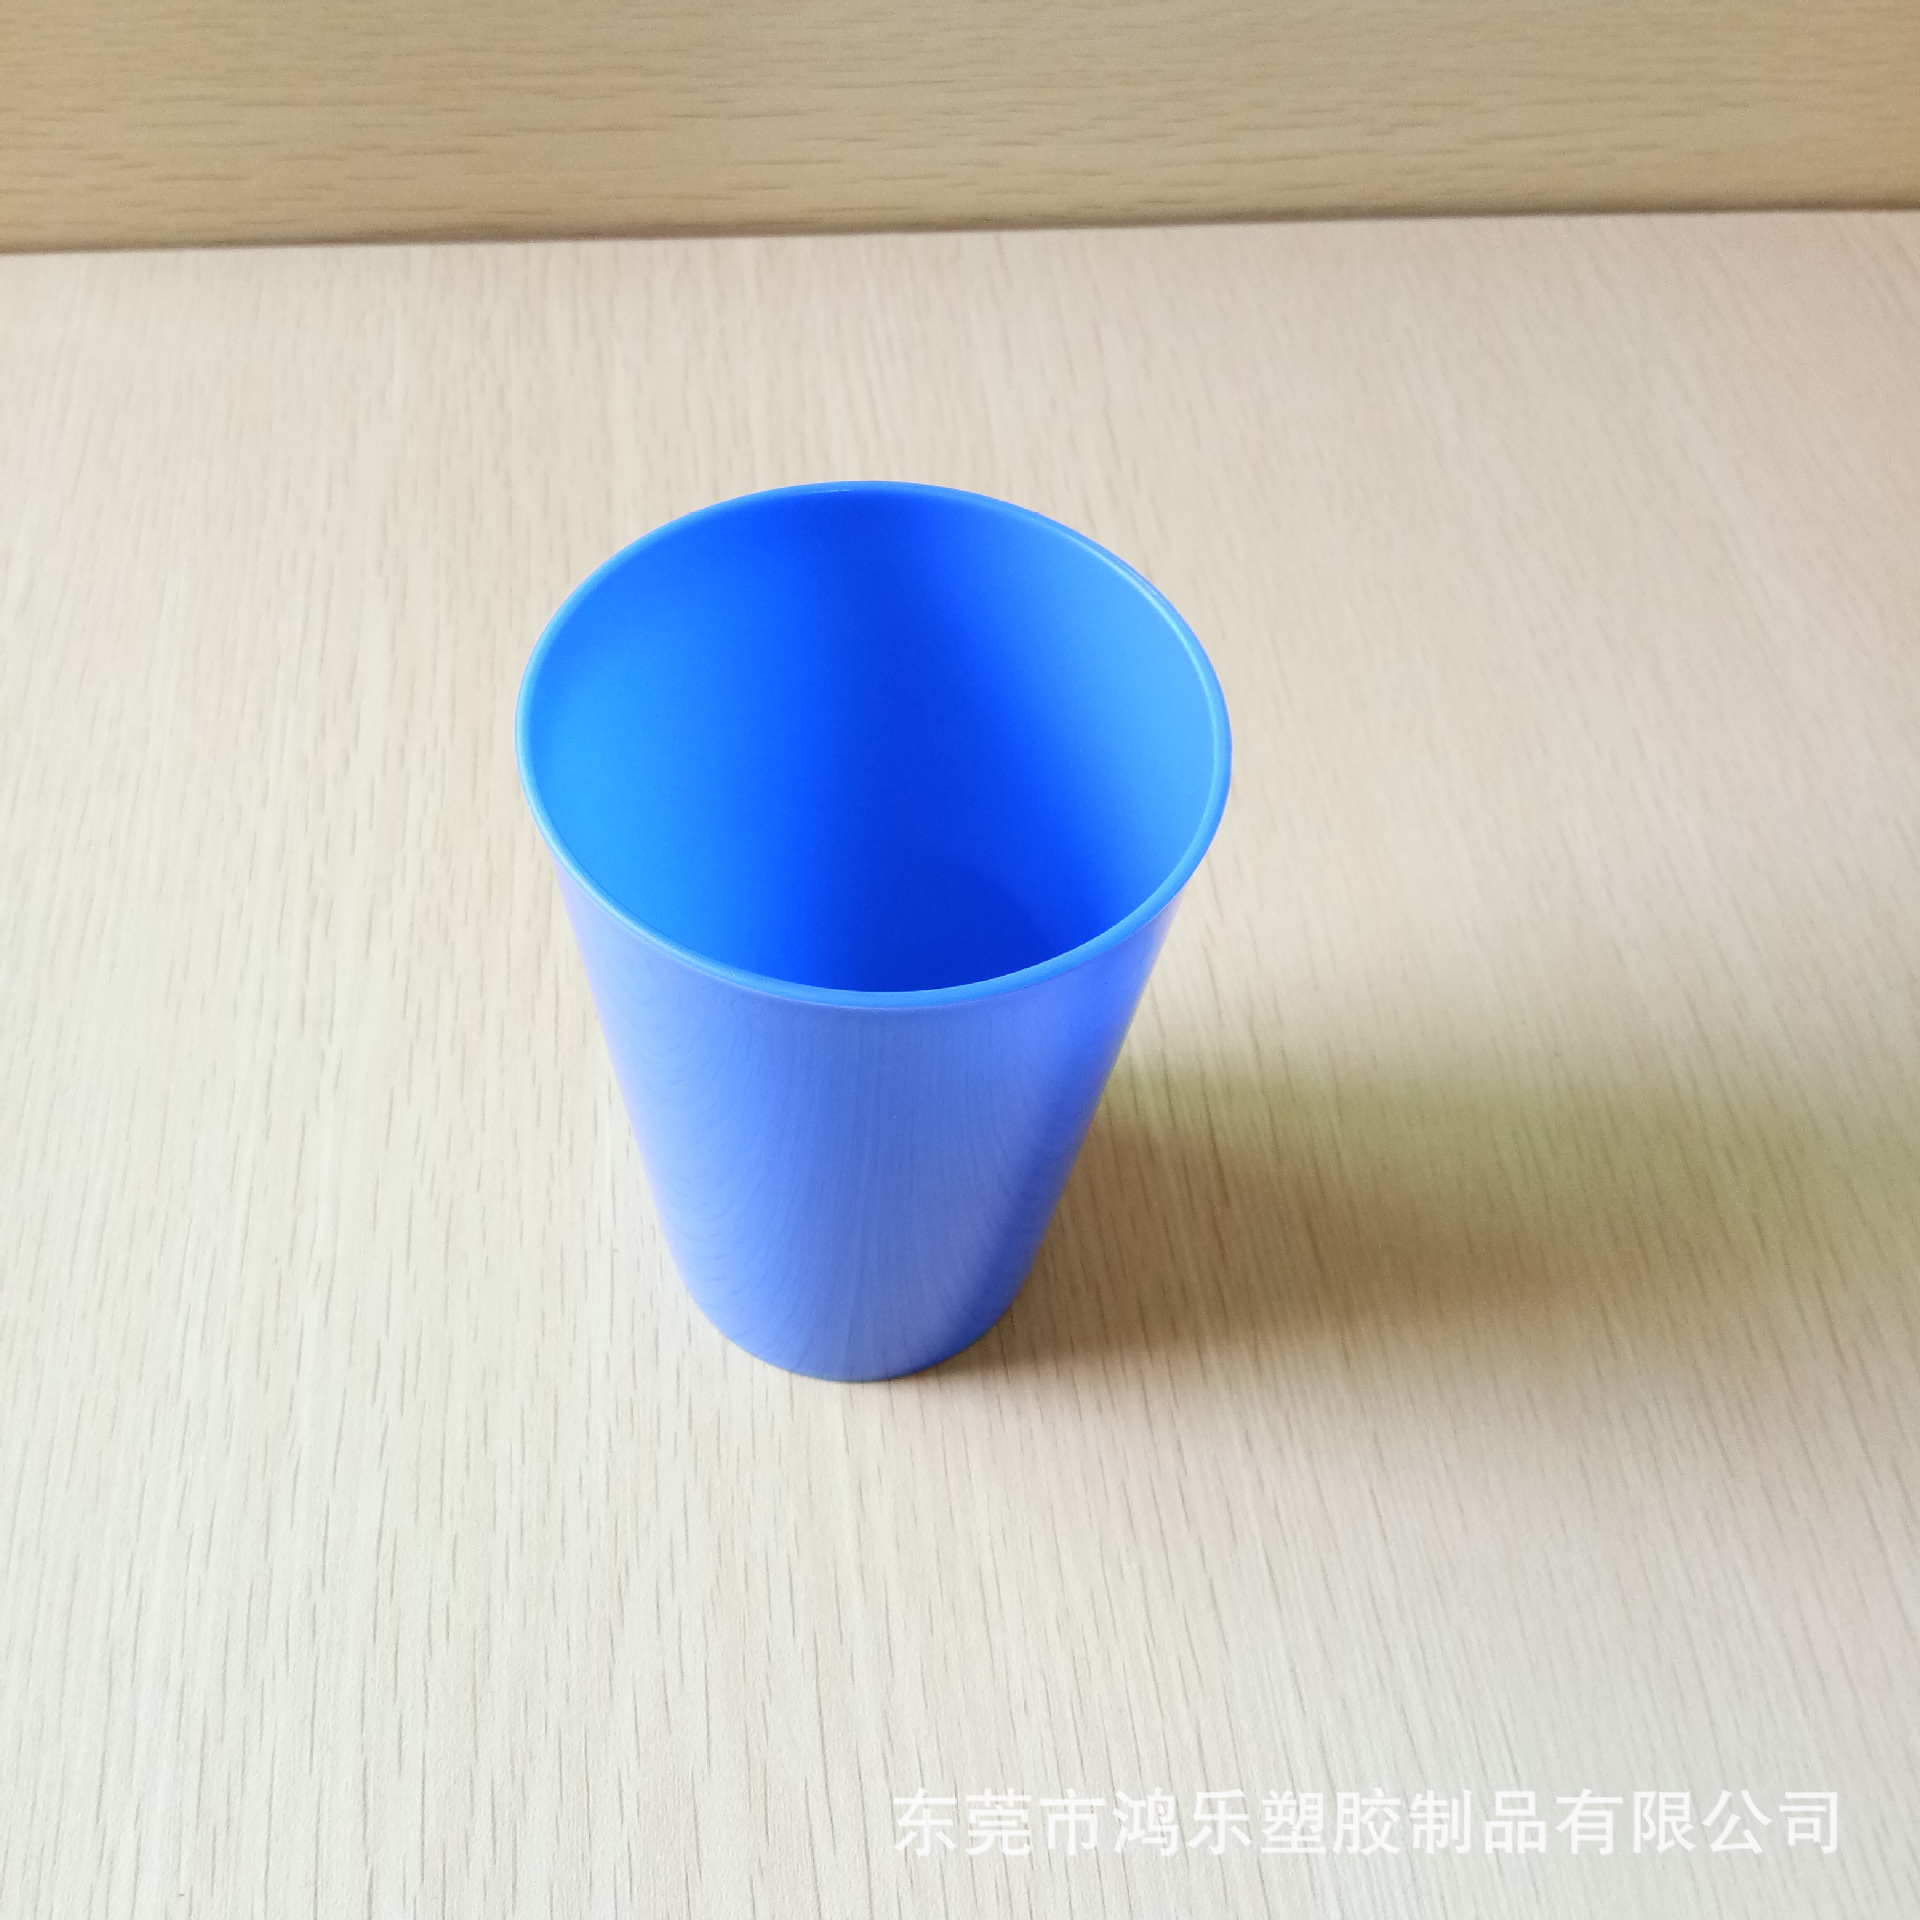 出口日本食品级彩色PP塑料杯红色塑料饮料杯厂家直销广告杯礼品杯示例图16